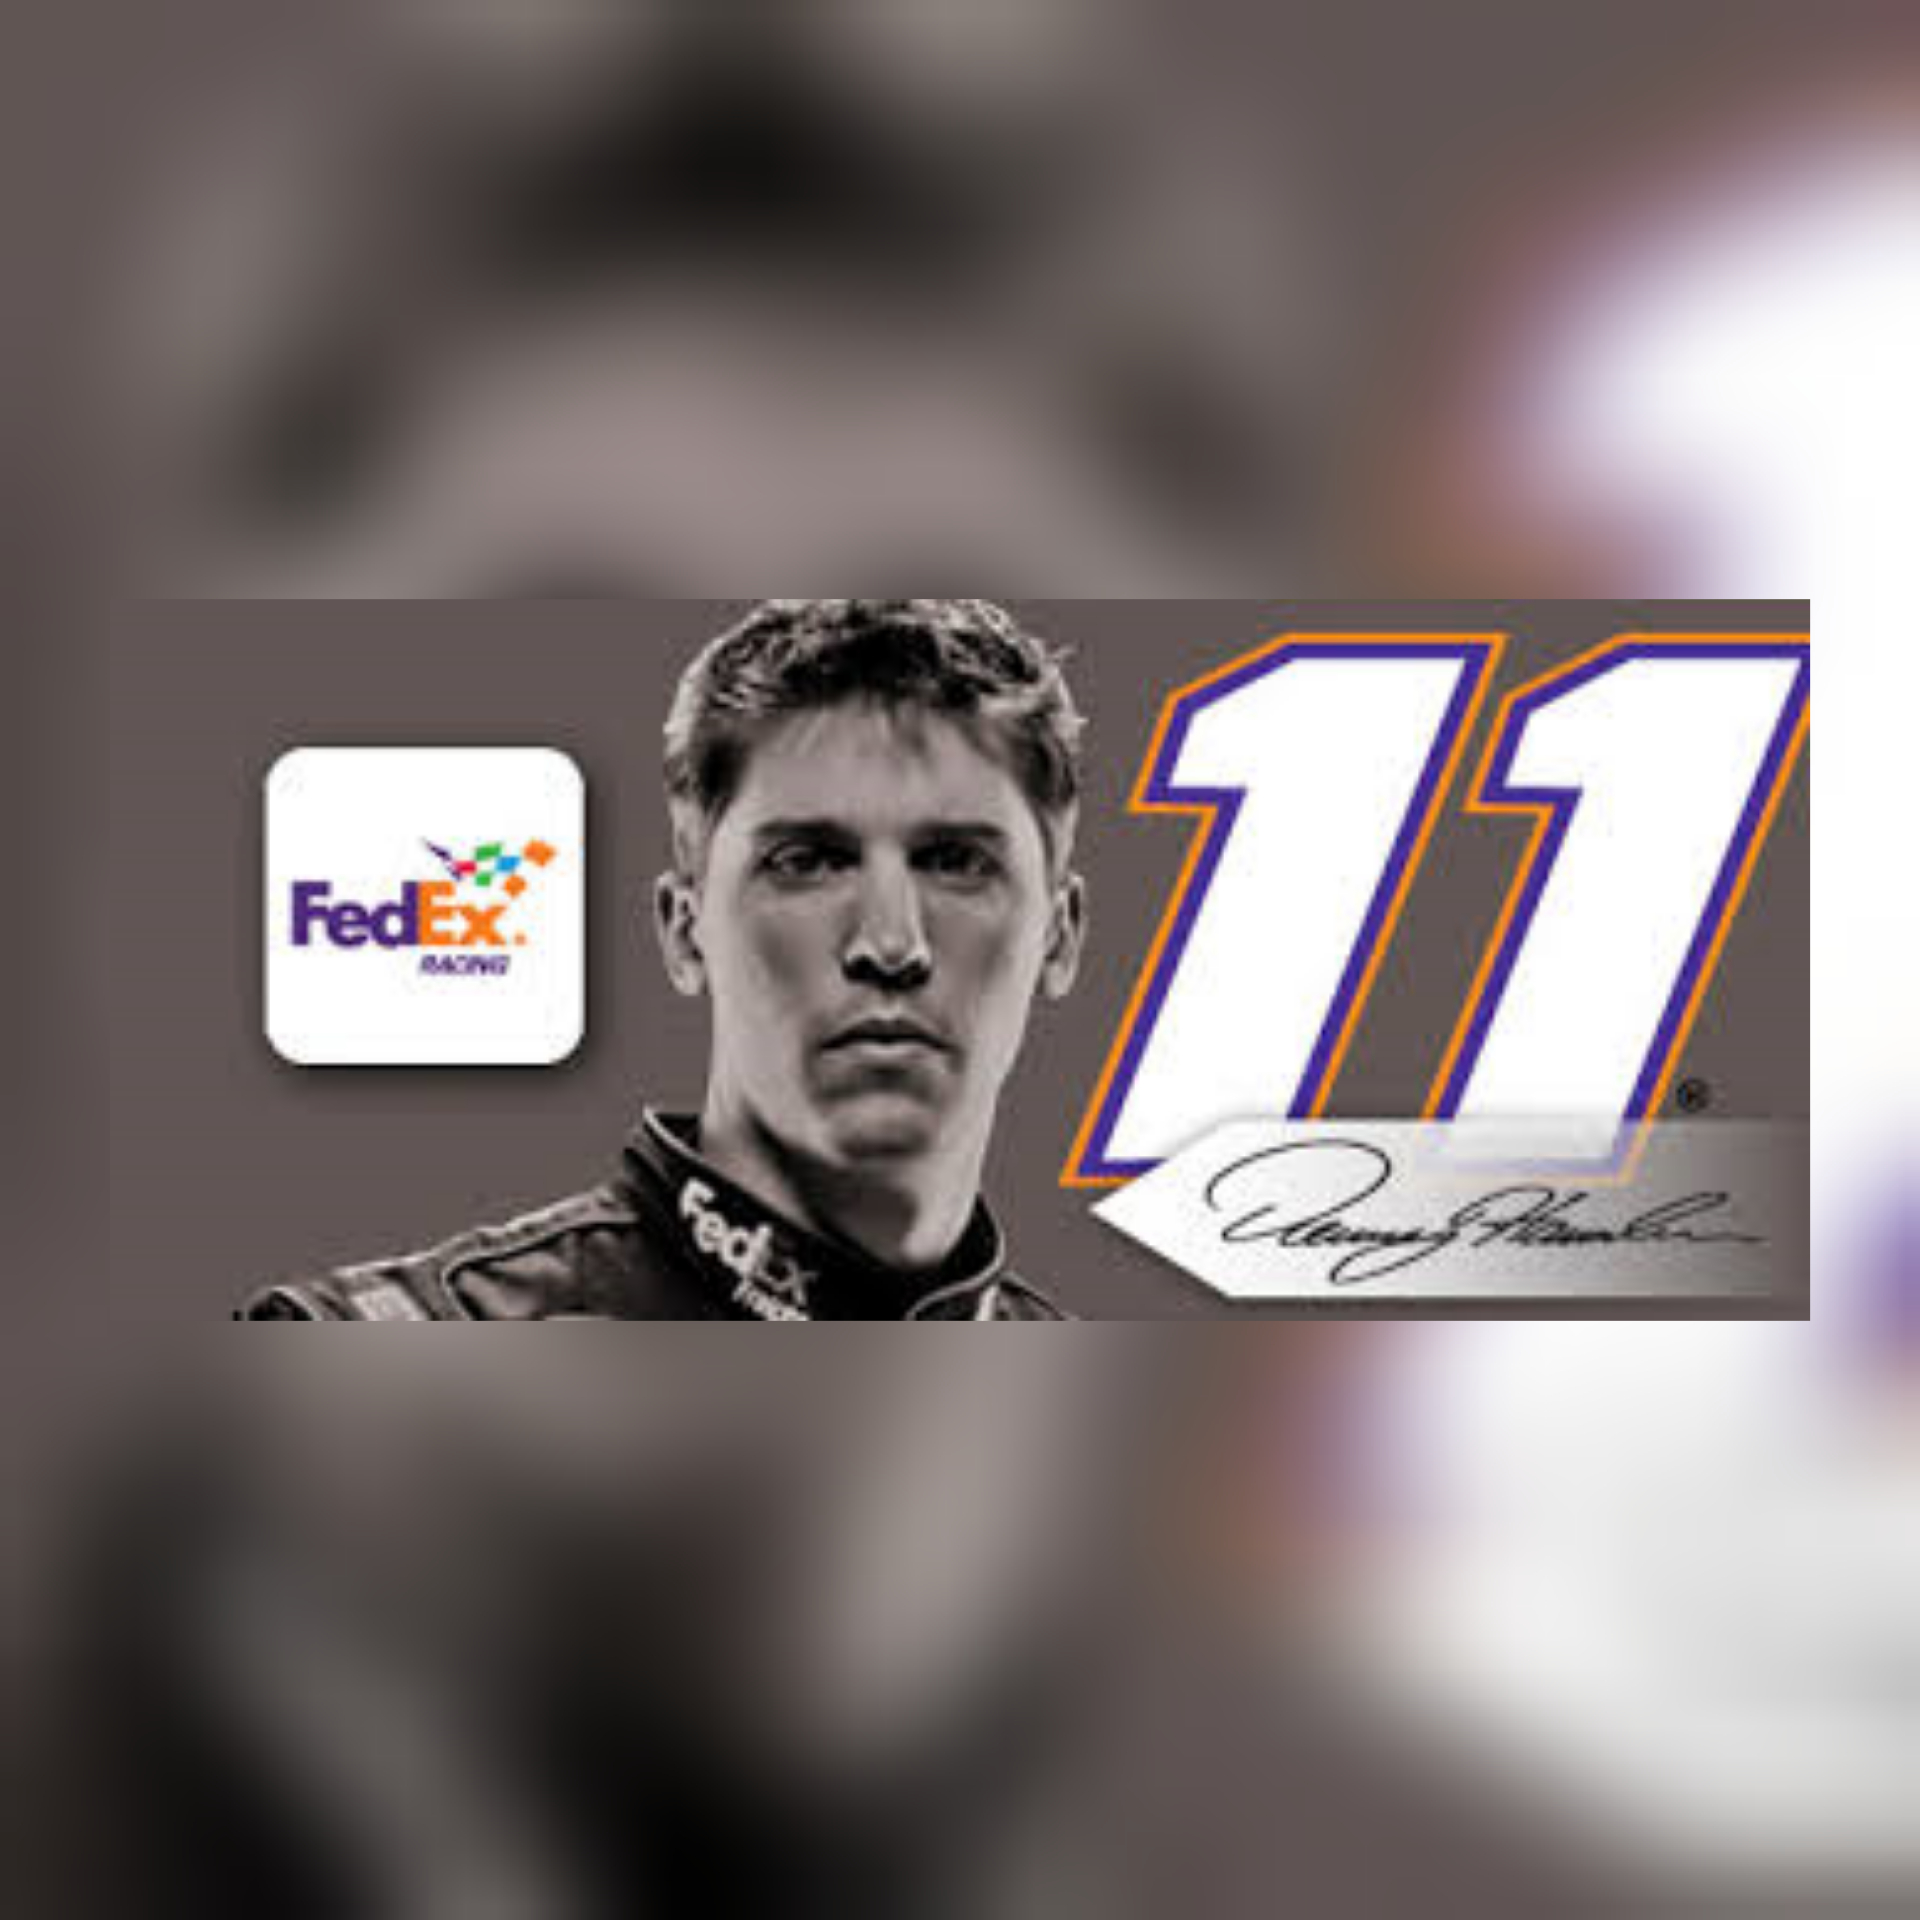 Meet NASCAR’s Denny Hamlin At The New FedEx Location Tomorrow (11-8)